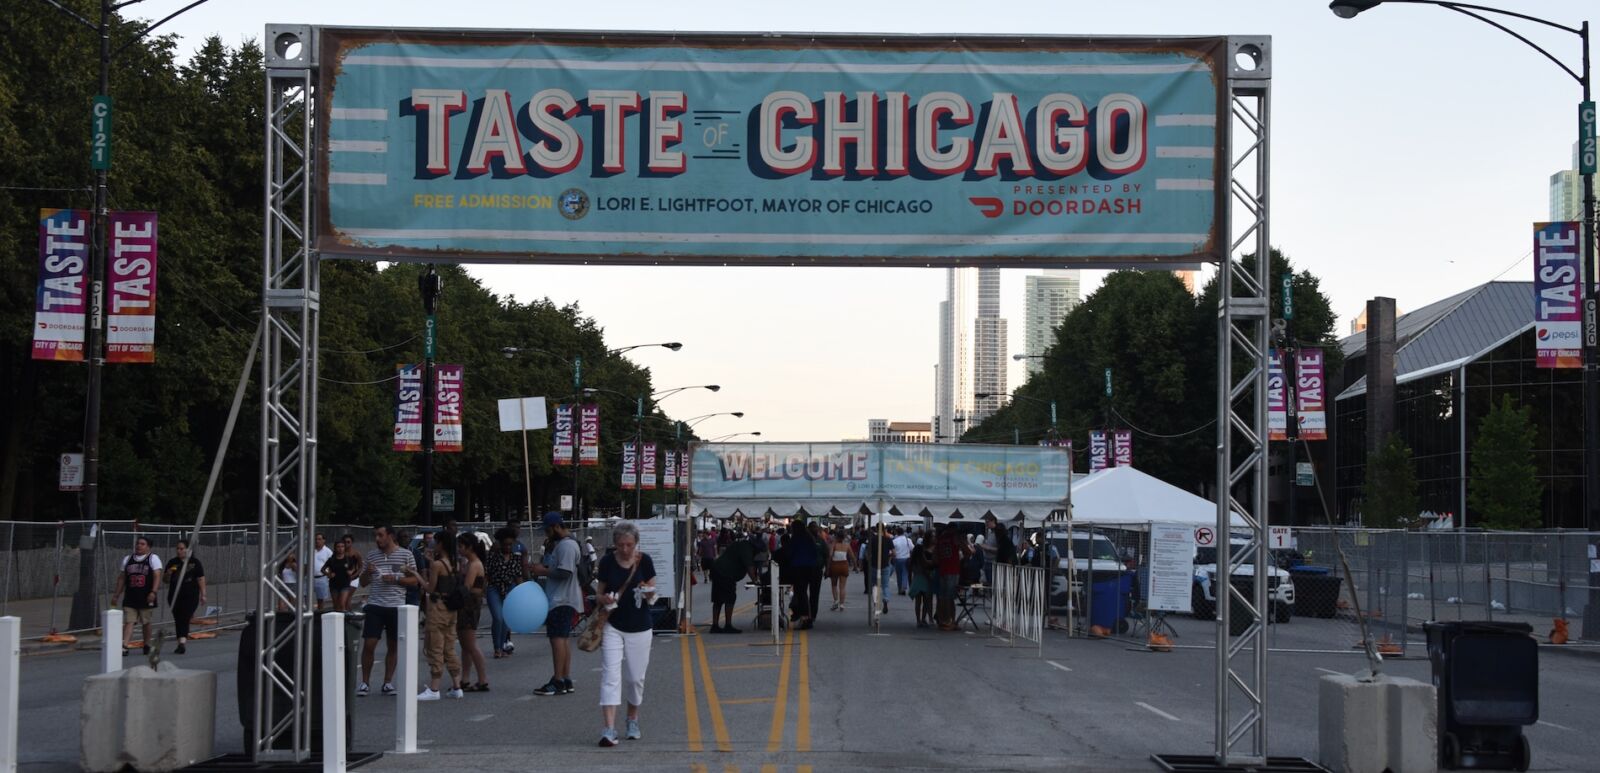 Taste of Chicago. Photo via Shutterstock.